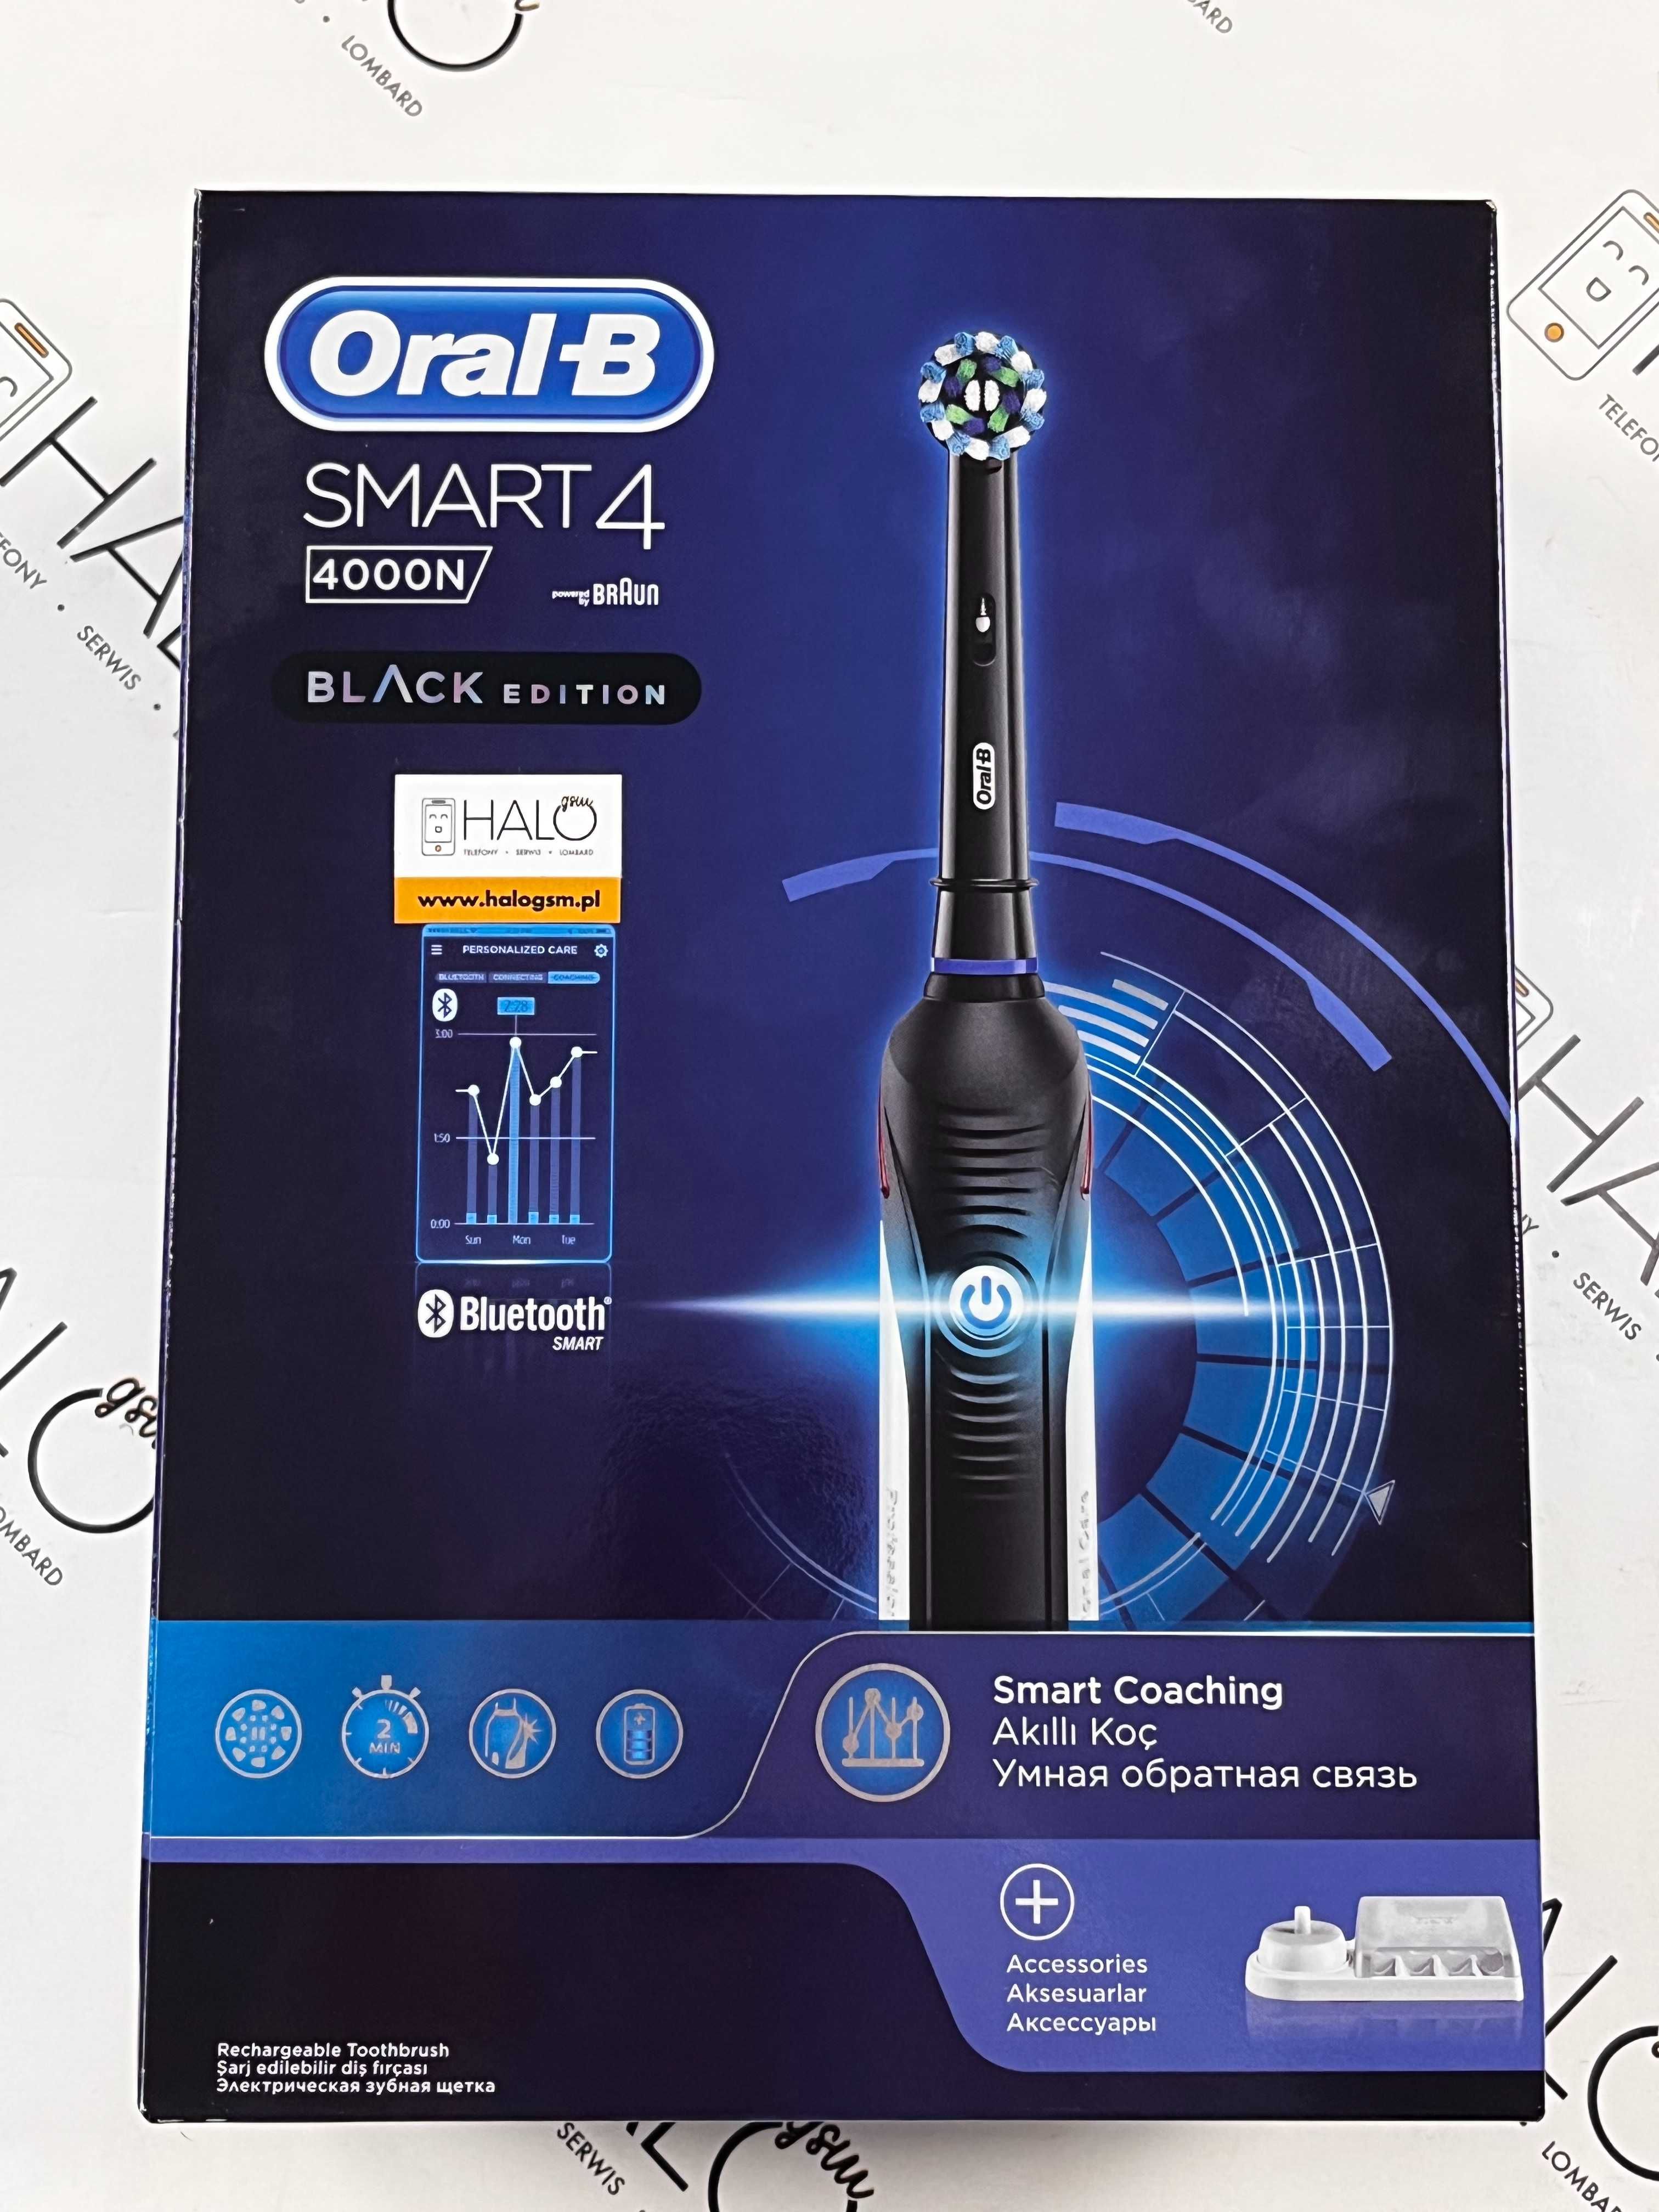 Nowa! Szczoteczka elektryczna Oral-B Smart 4 4000N, Lombard Halo gsm